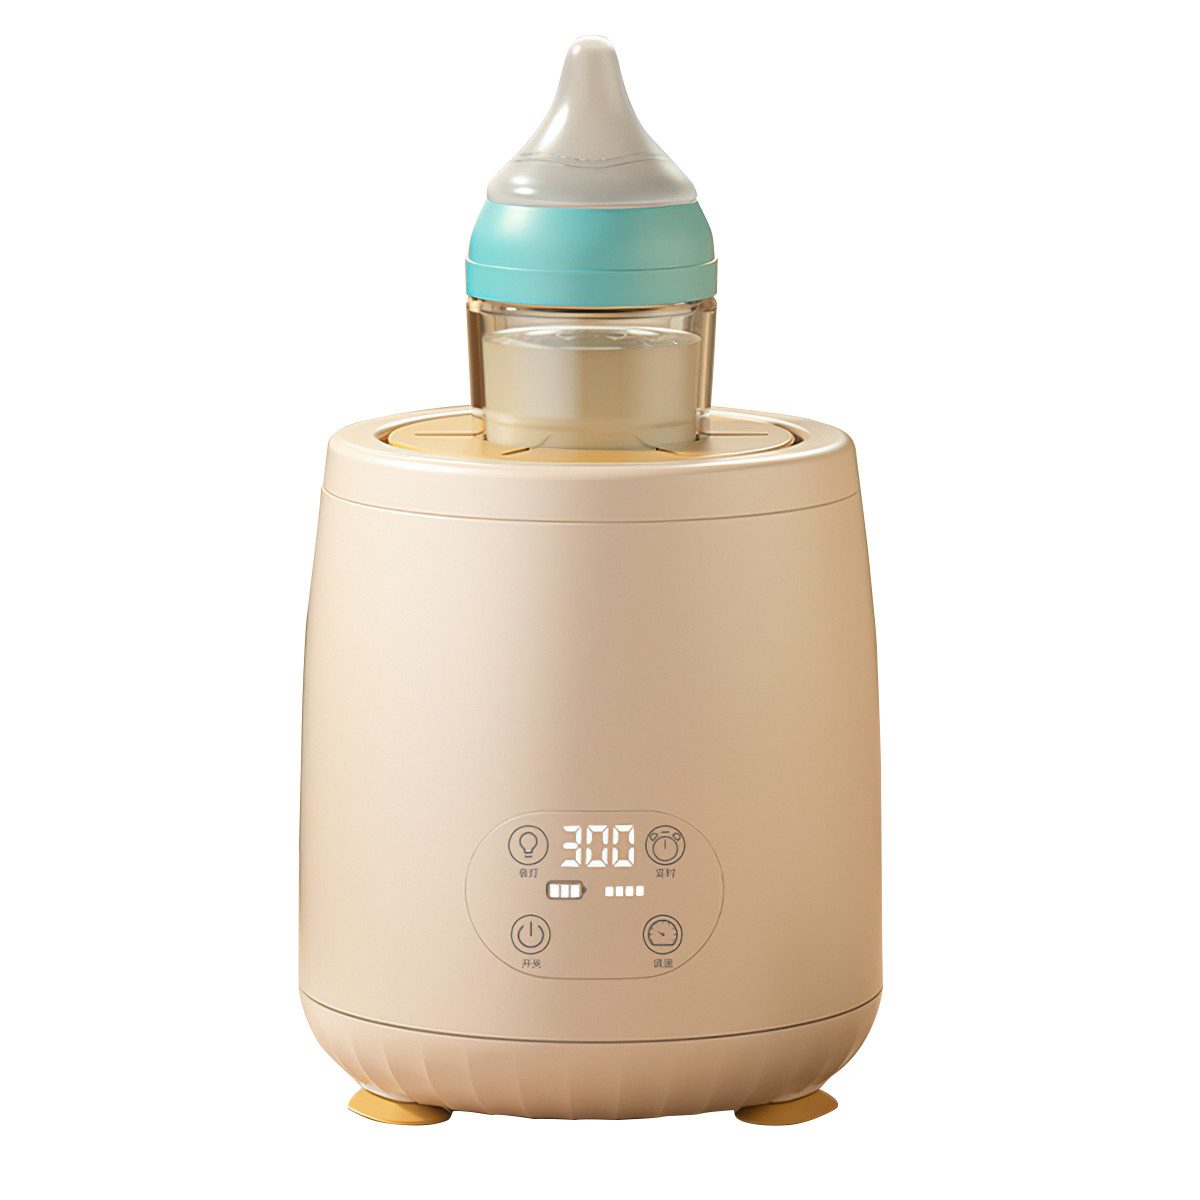 Welikera Babynahrungszubereiter Milchpulver-Shaker, Warmhalten 45°,4-stufig regelbar mit Nachtlicht